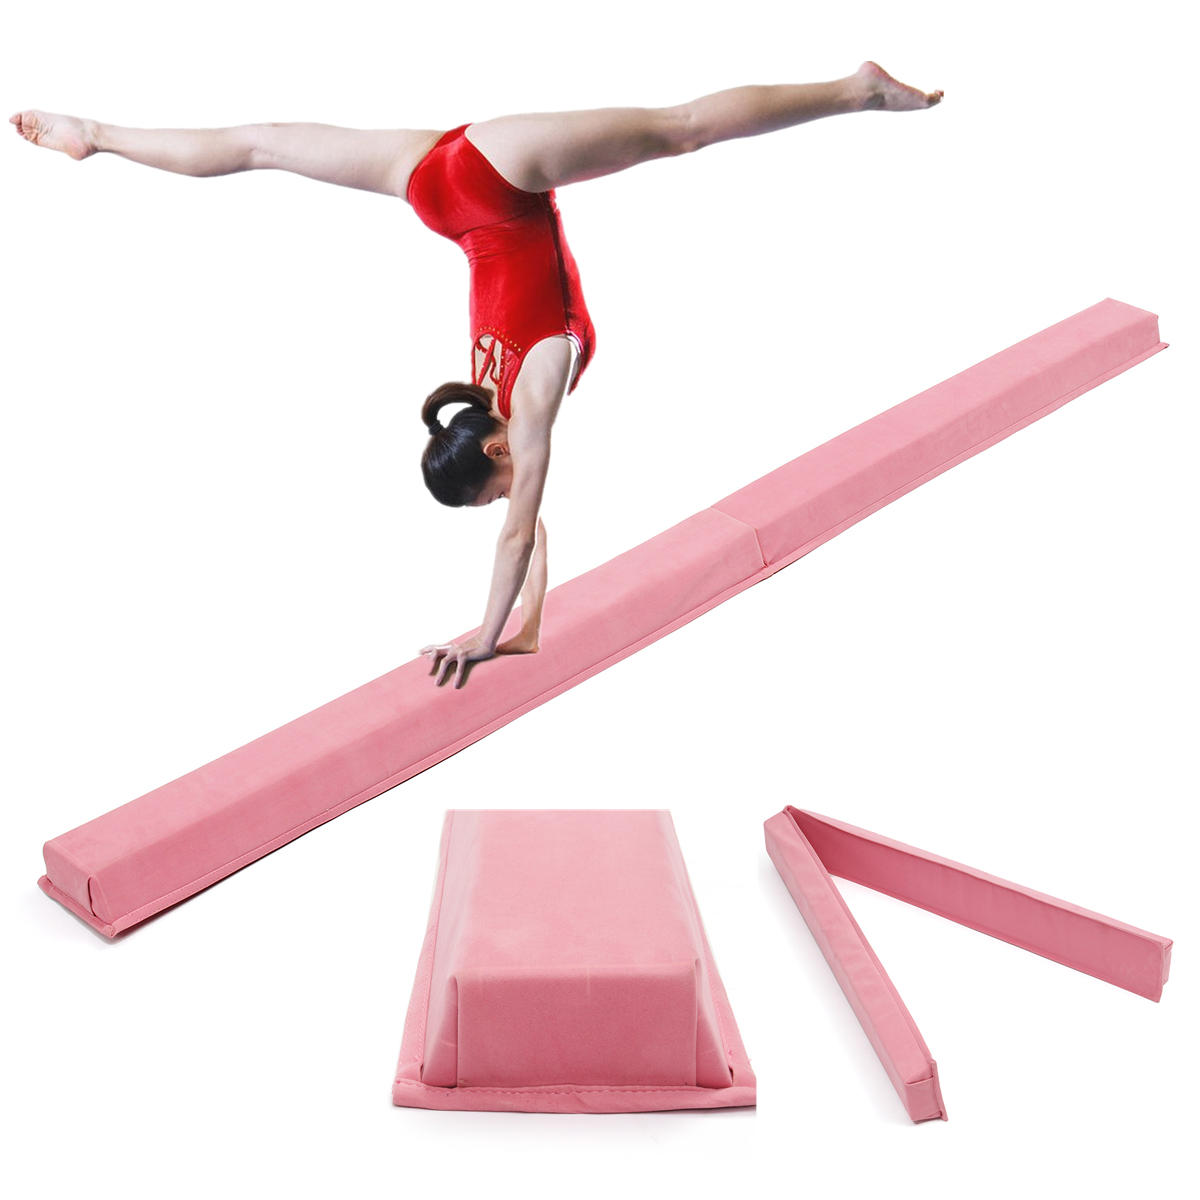 Różowa profesjonalna mata równoważna do gimnastyki dla dorosłych i dzieci o wymiarach 94,5x5,9 cala do szkolenia umiejętności i poprawy wydajności.